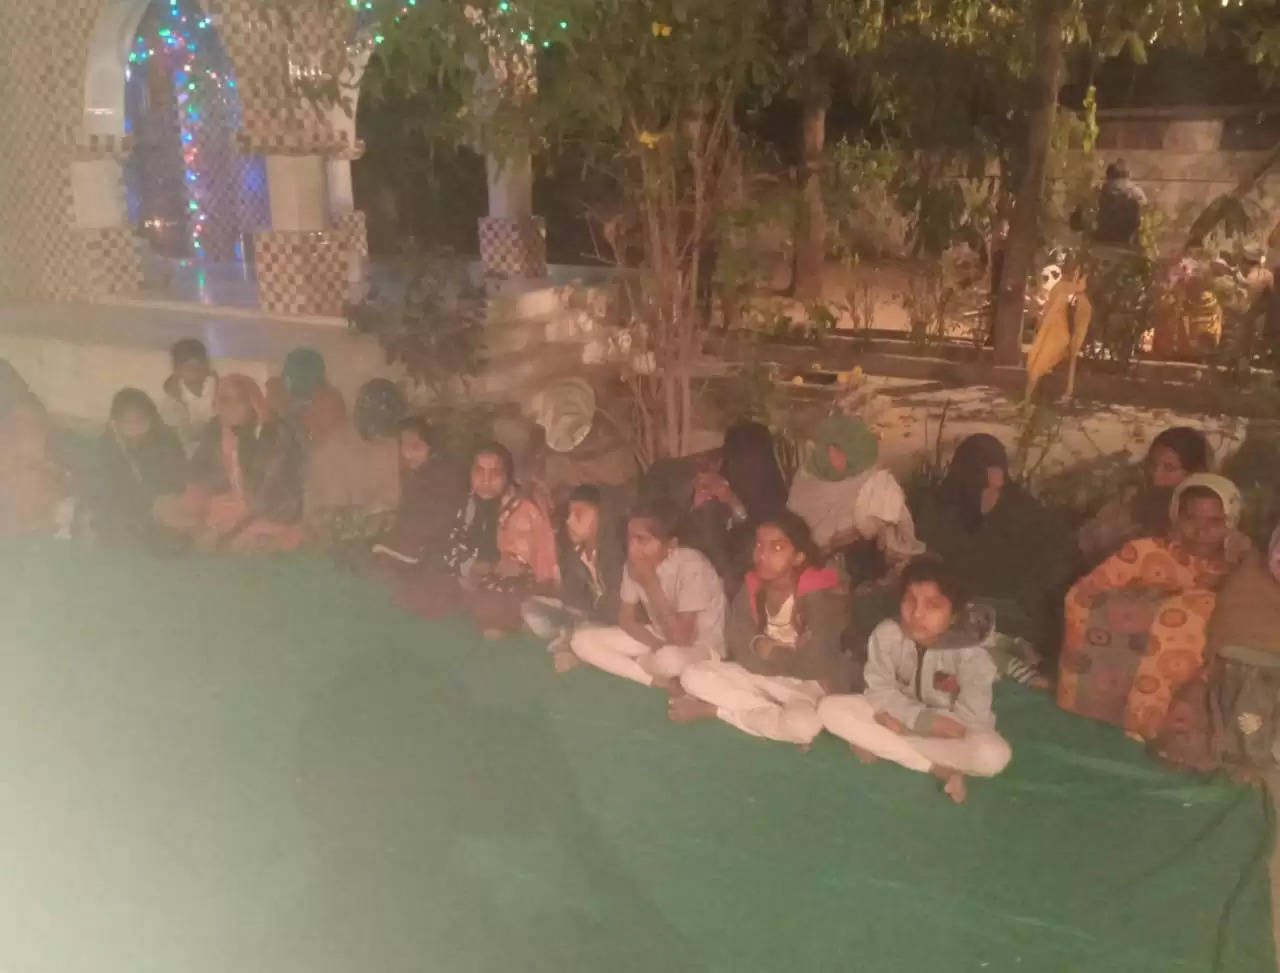 ધાર્મિક@કાંકરેજ: મહા શિવરાત્રિએ શિવધામમાં ભજન-સત્સંગ કાર્યક્રમ યોજાયો